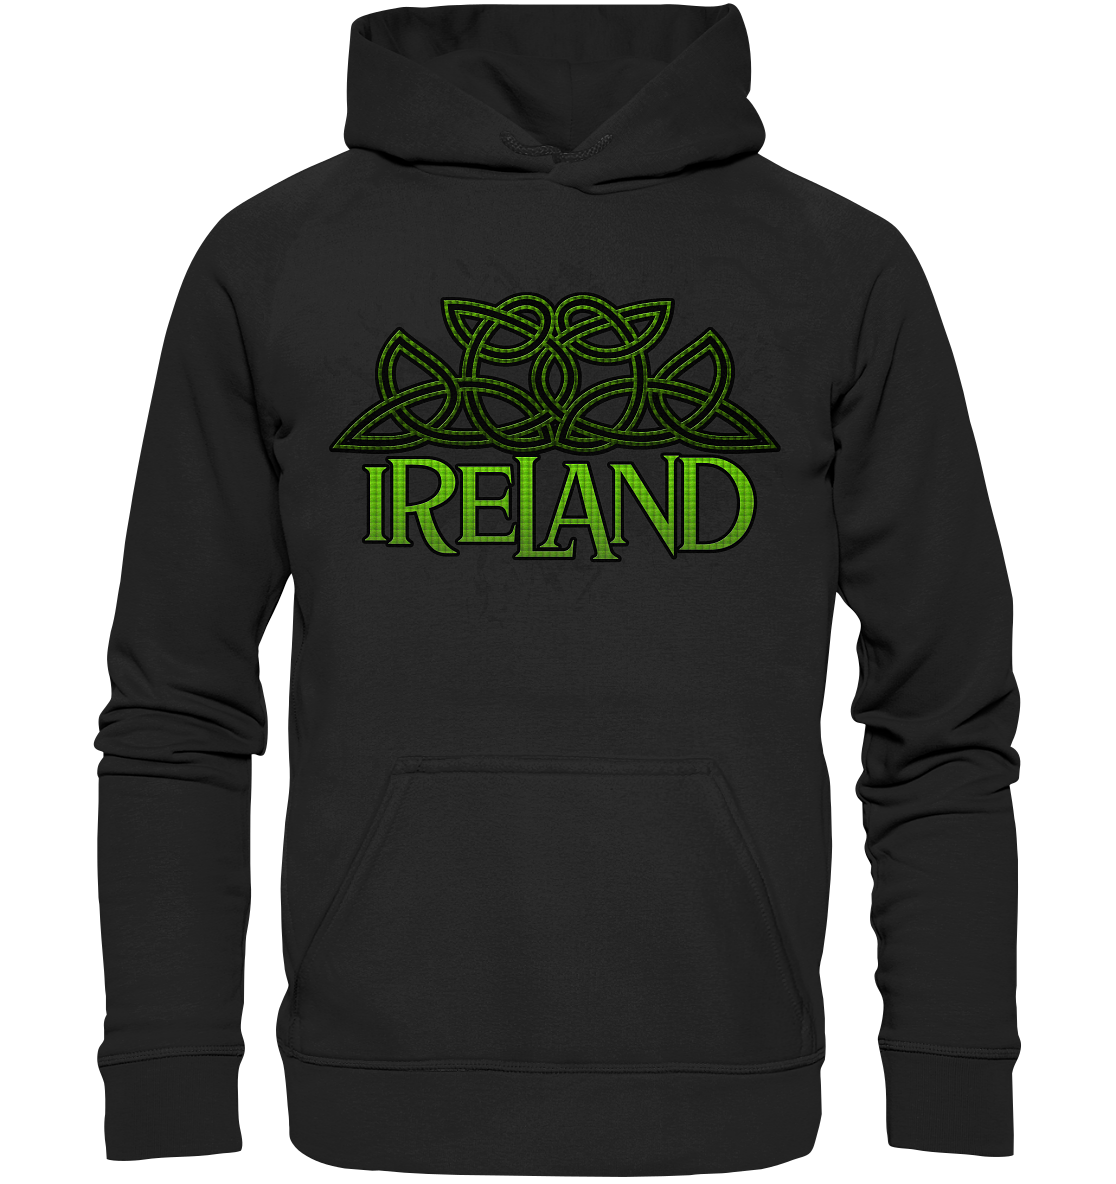 Ireland "Celtic Knot" - Basic Unisex Hoodie